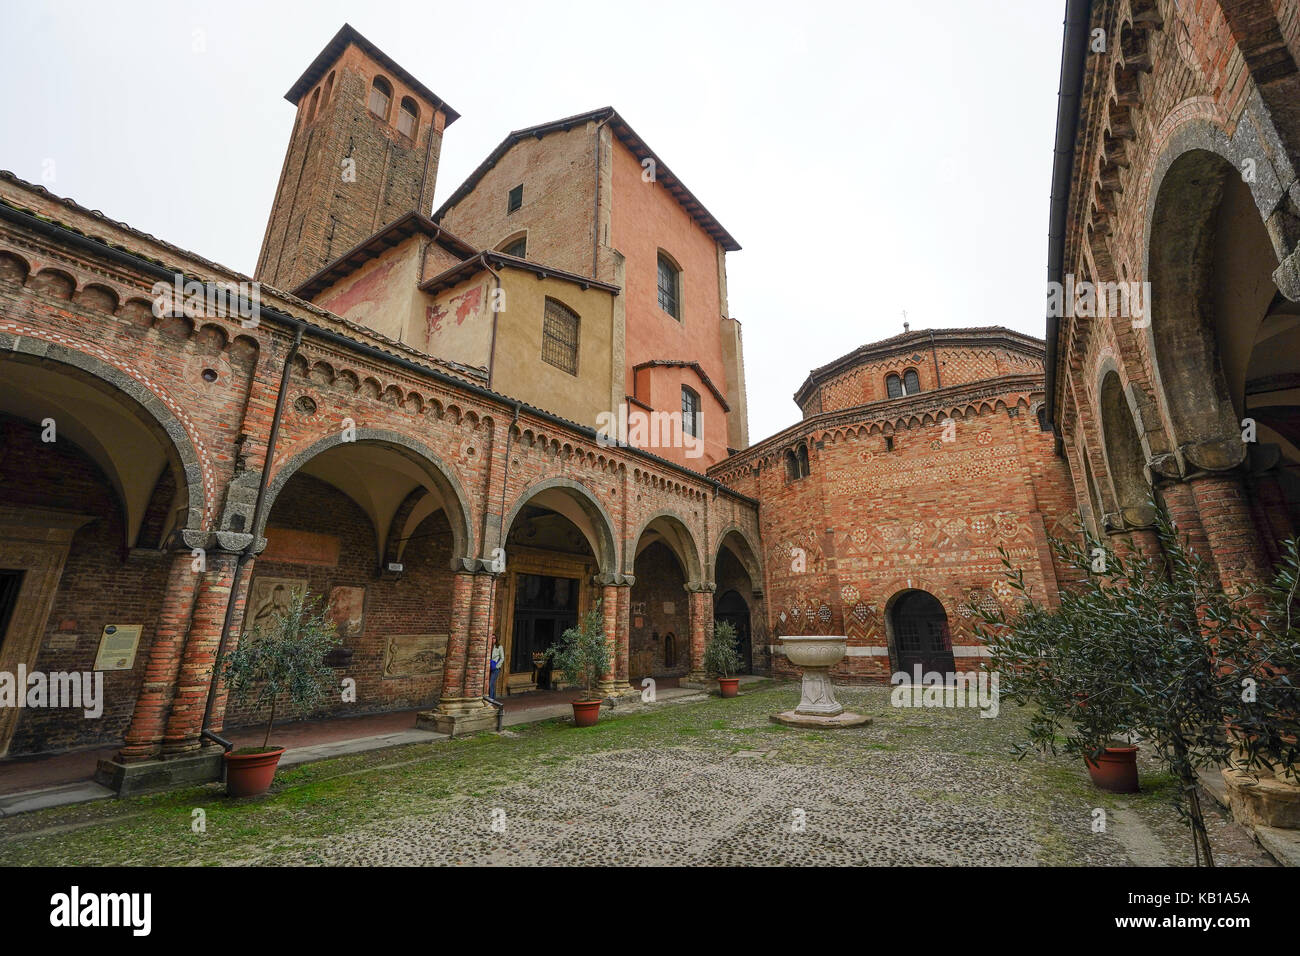 Vista del cortile della basilica di Santo Stefano in Bologna. da una serie di foto di viaggio in Italia. photo Data: sabato, 16 settembre 2017 Foto Stock